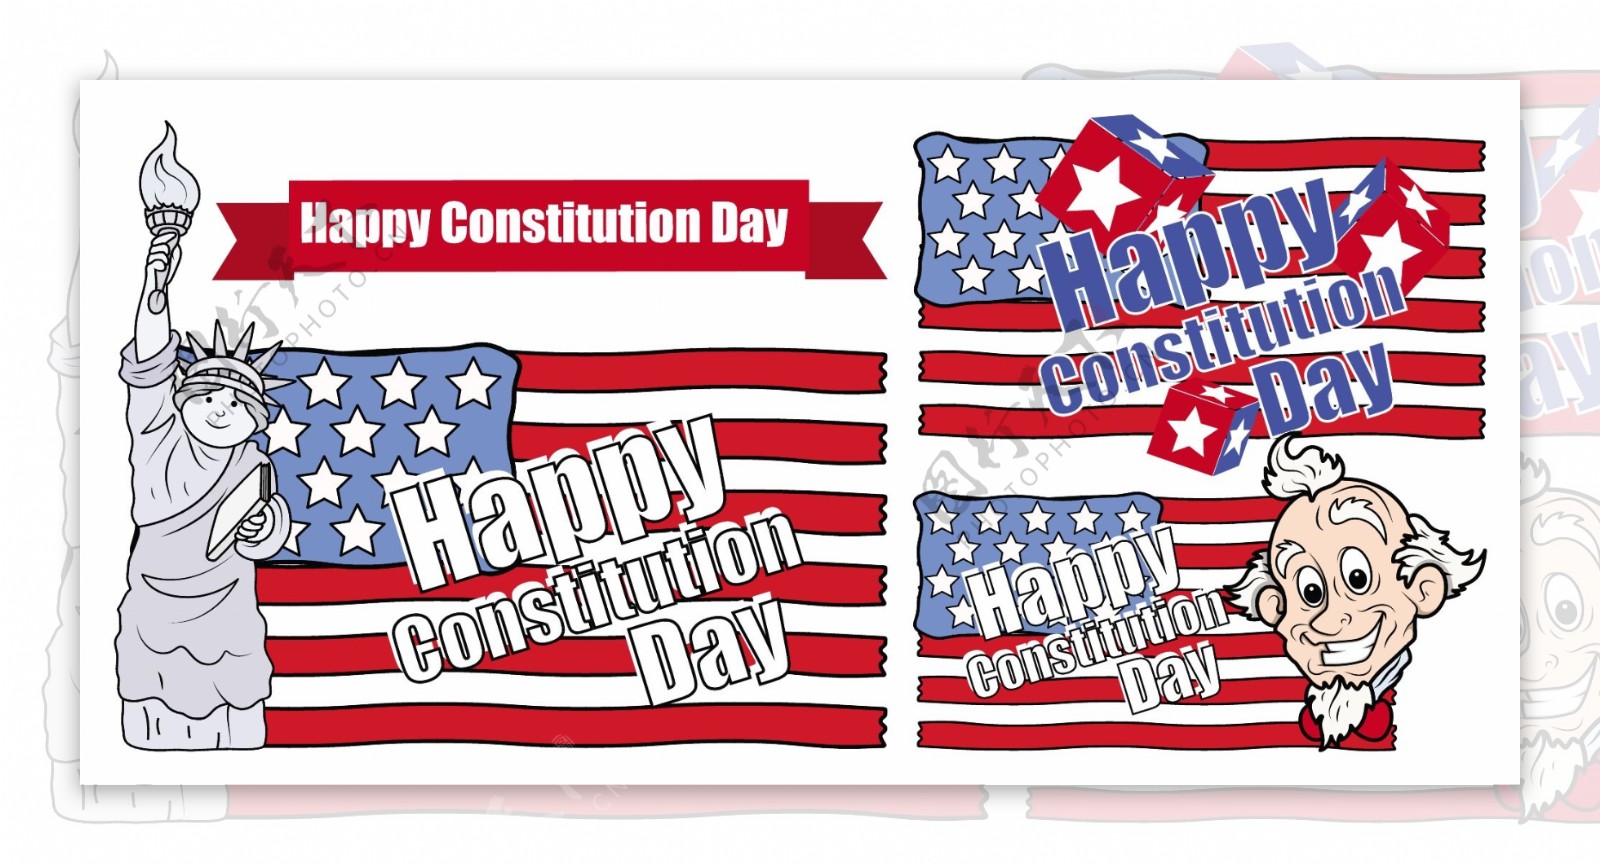 美国宪法日矢量卡通插画设计